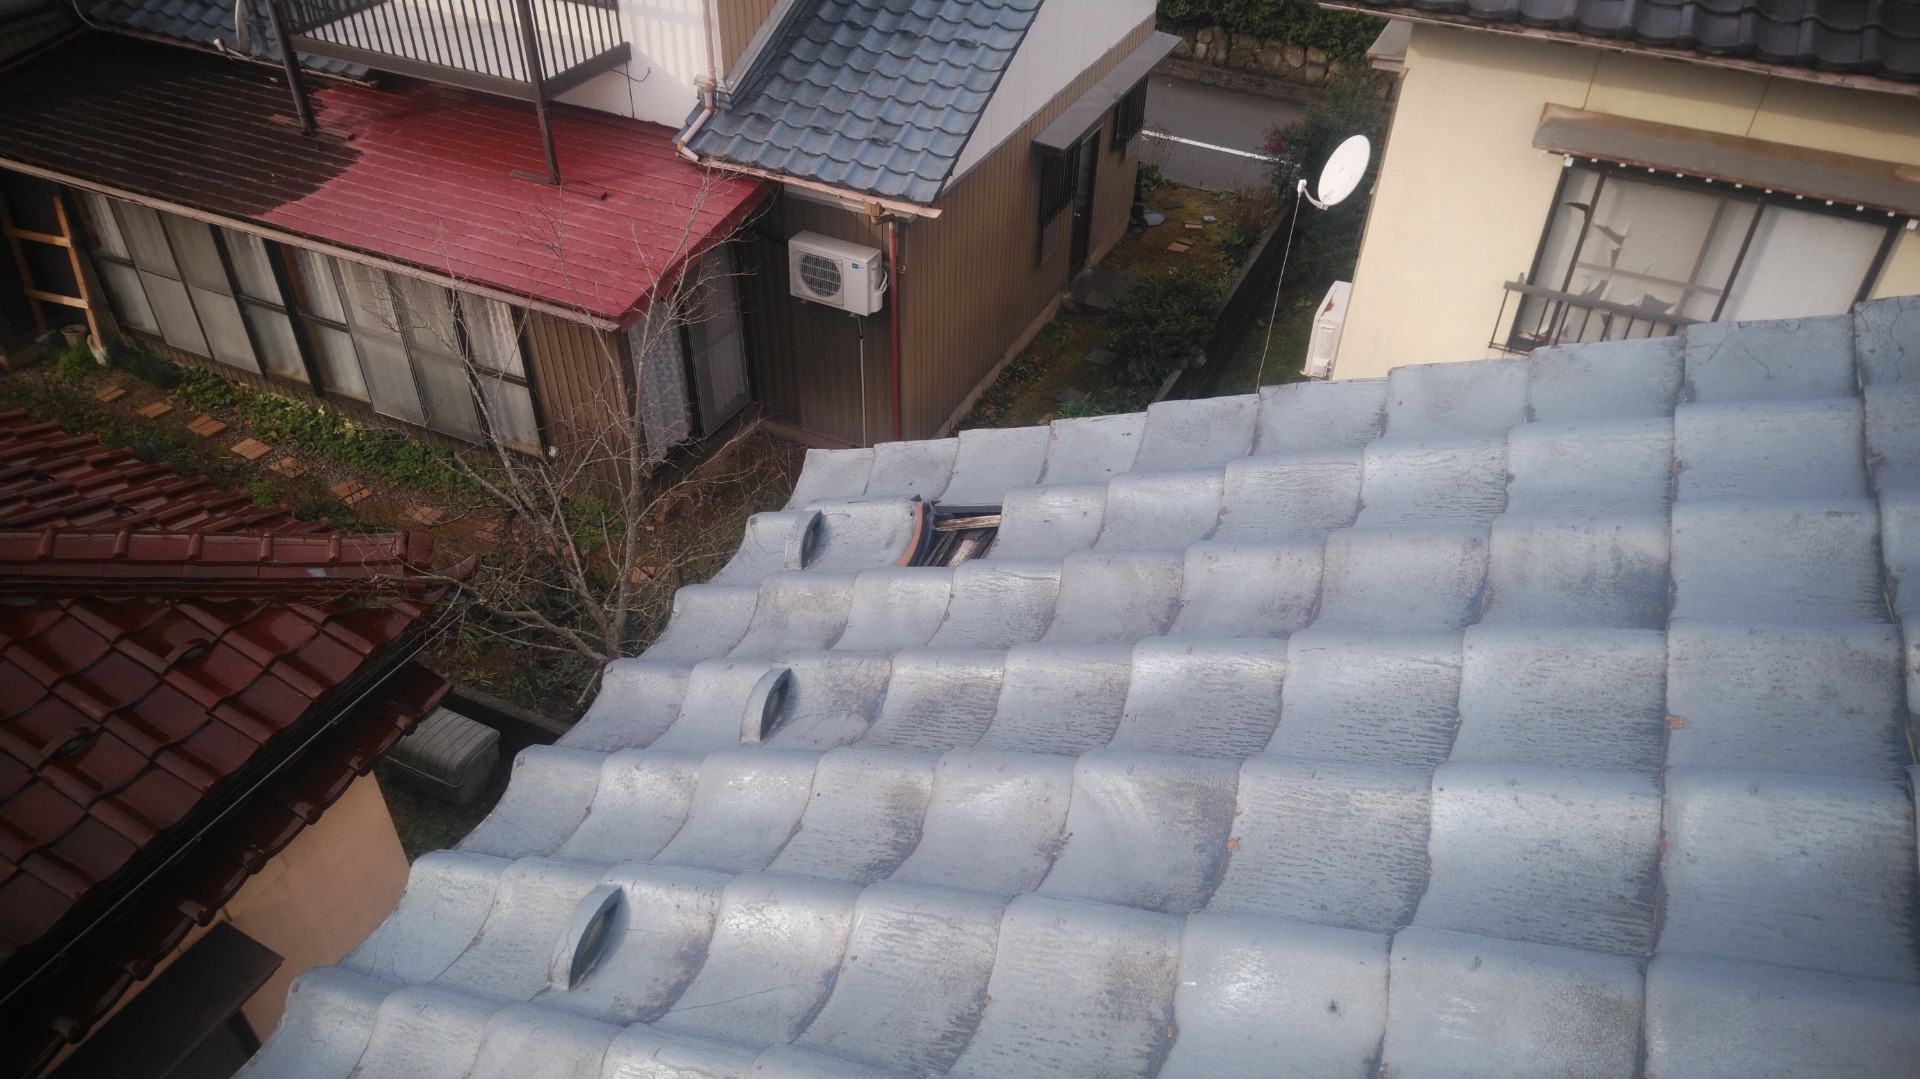 鯖江市で雨漏り修理の現場調査に来ています。